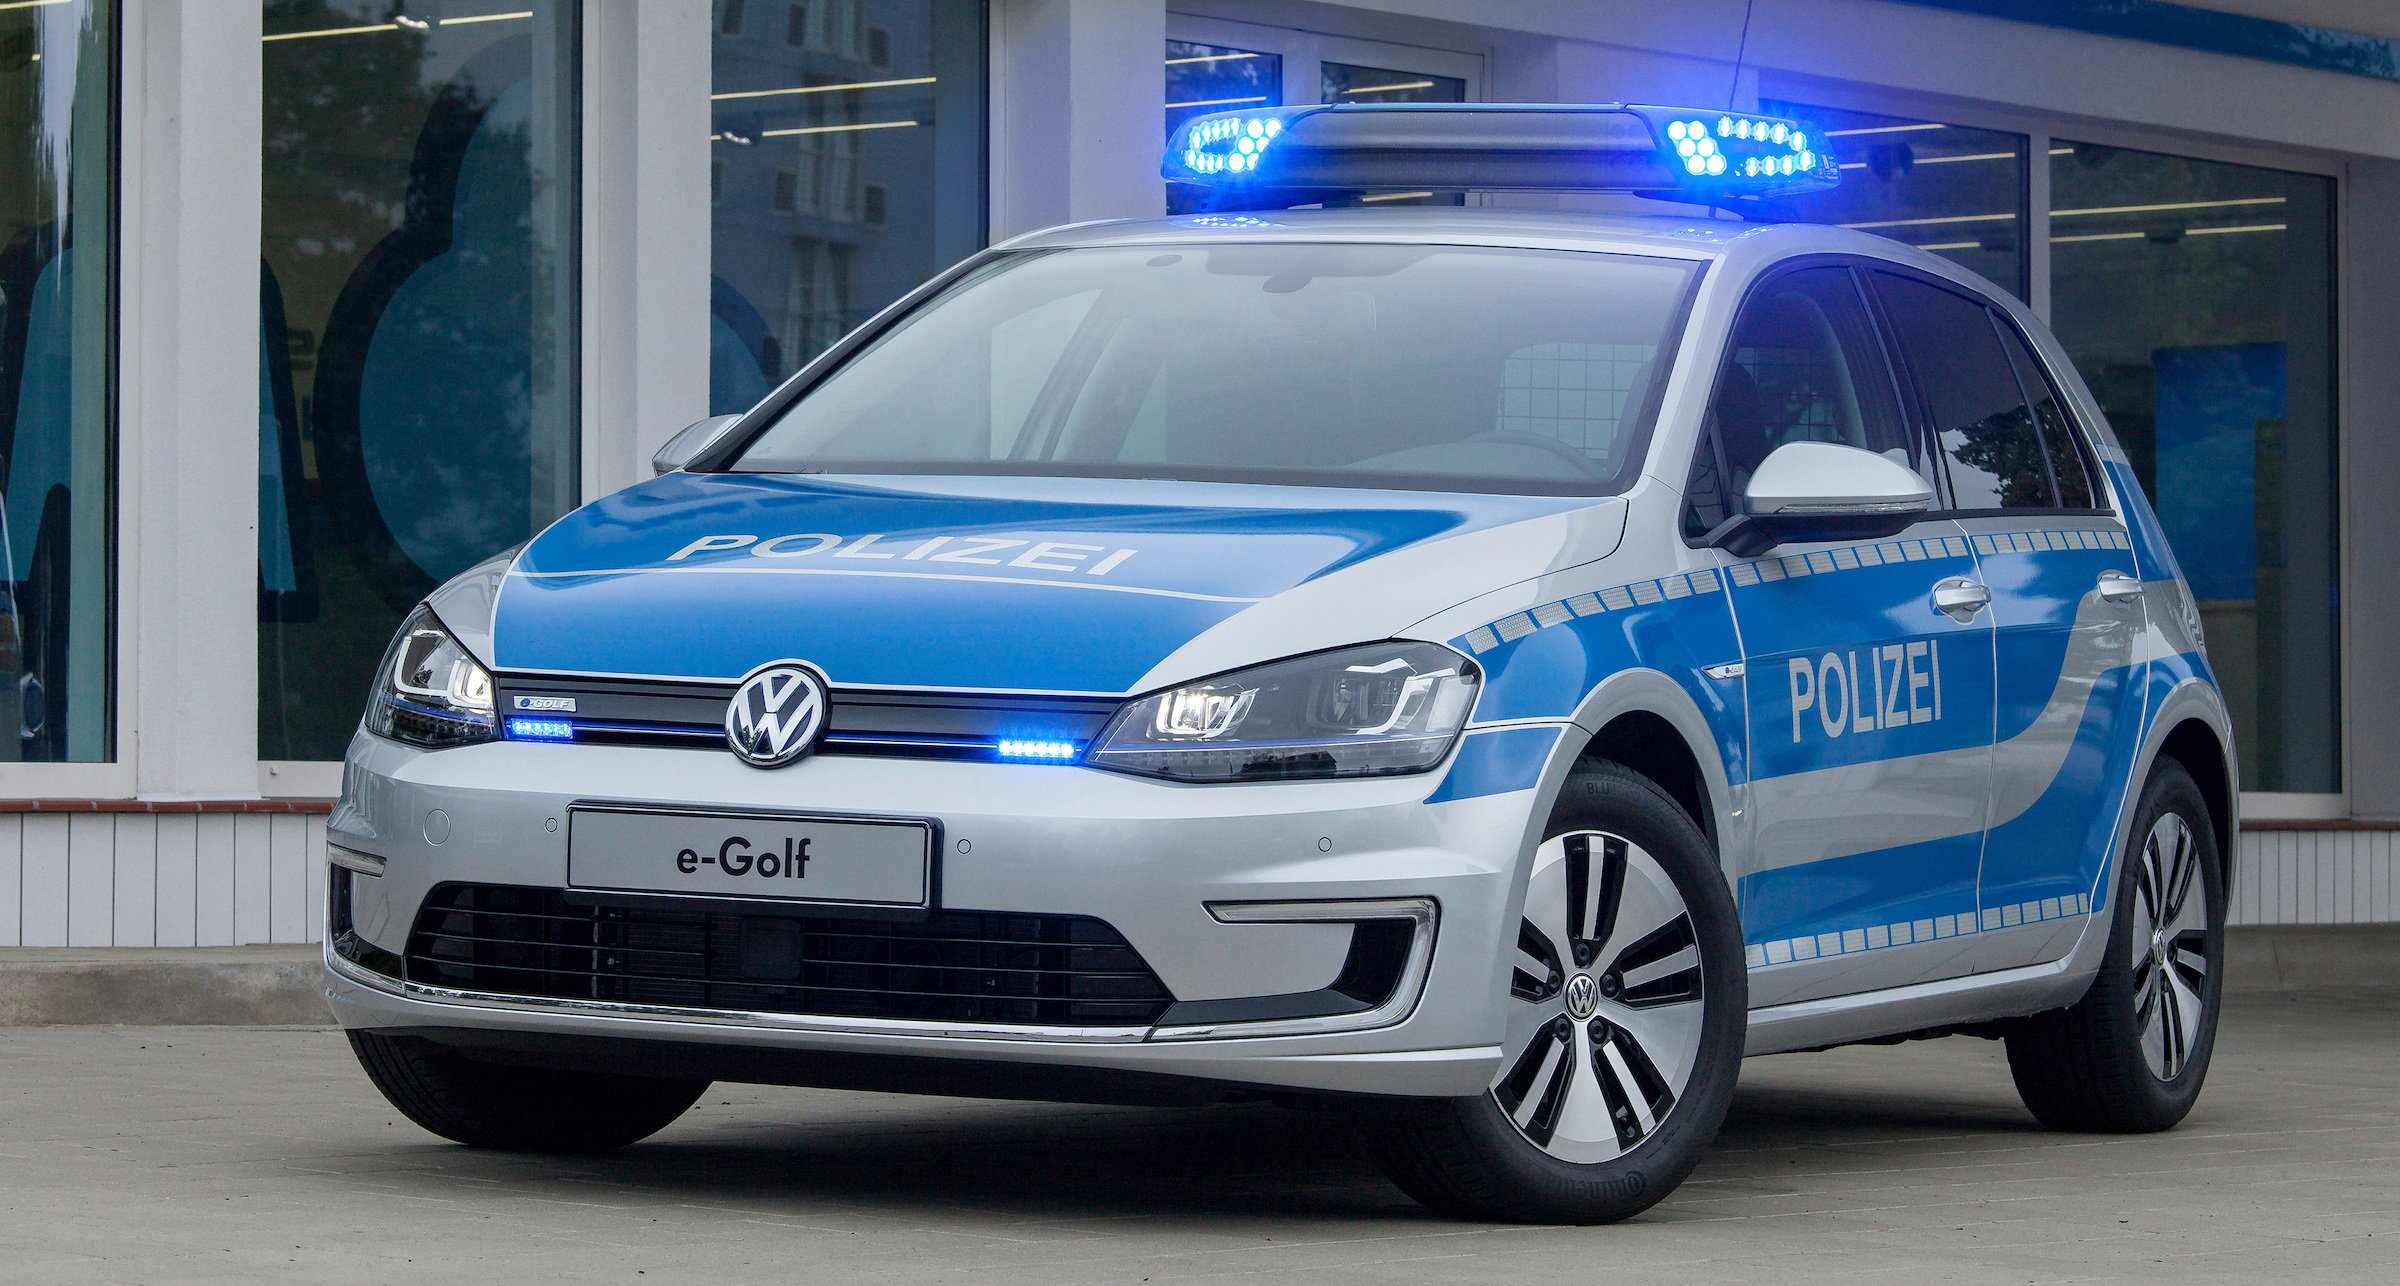 Sąd uważa, że może istnieć samochód w kolorze Polizei. Czy można jeździć w barwach policji?